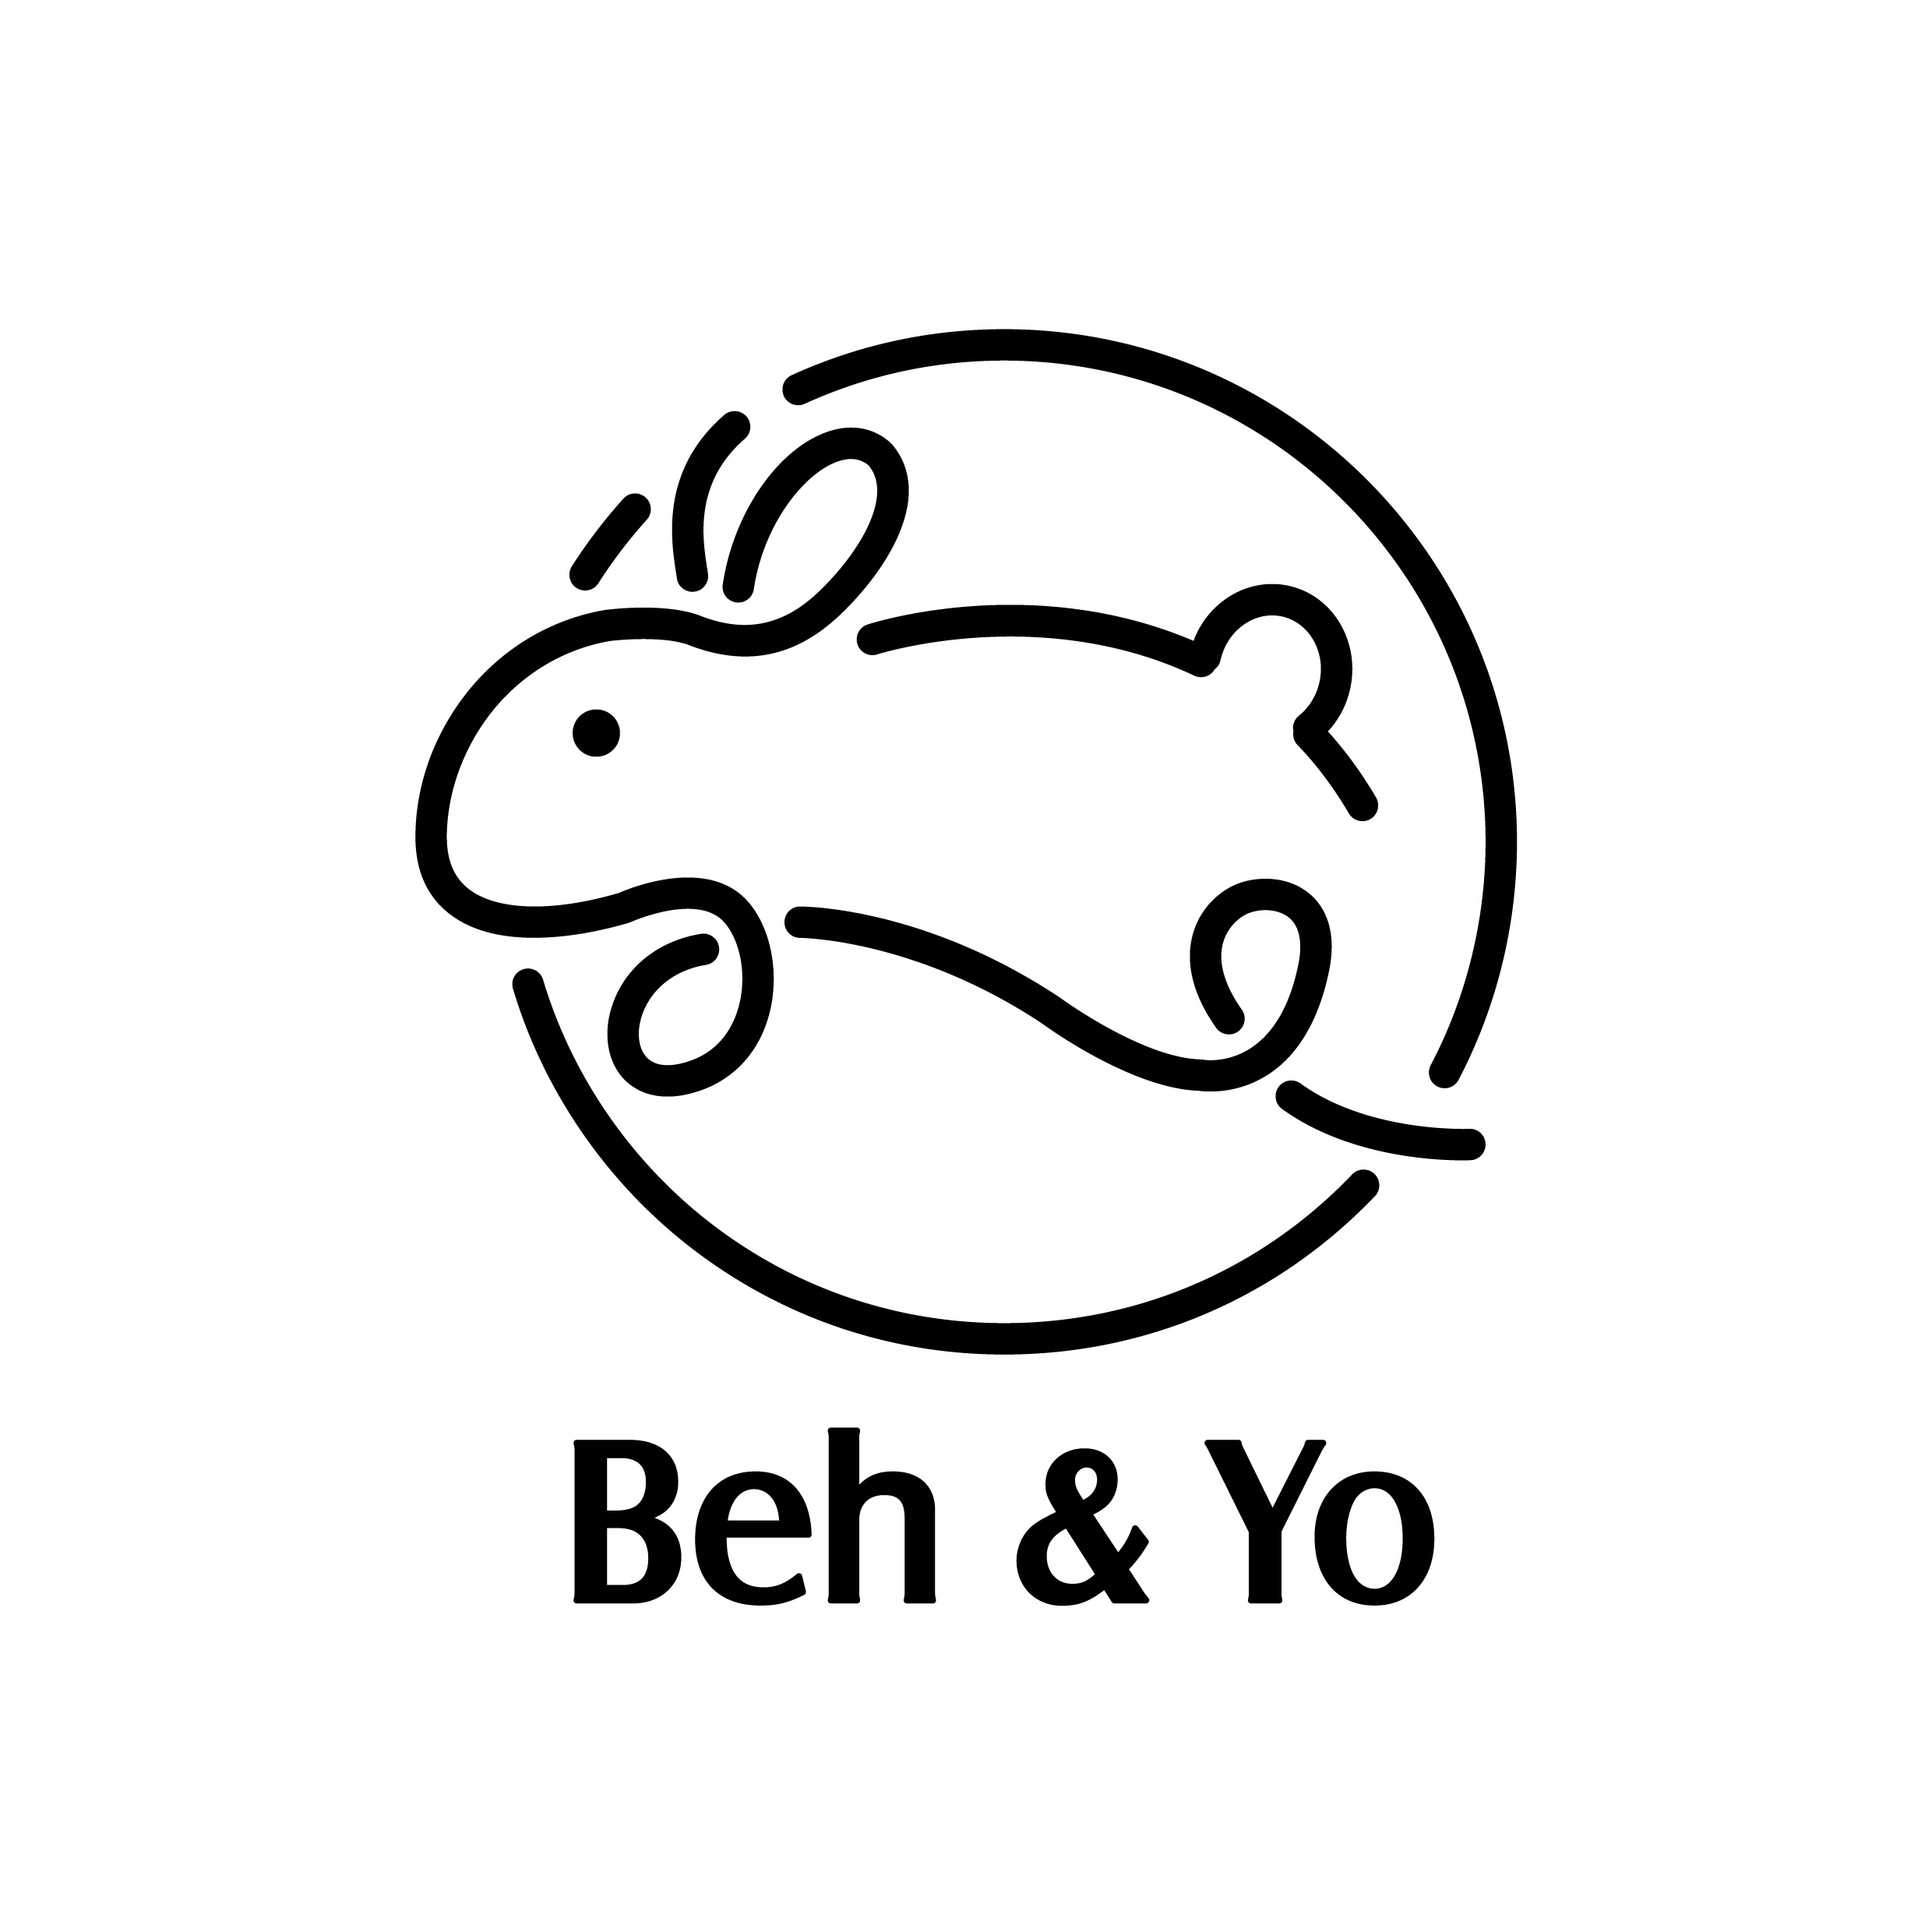 Beh & Yo